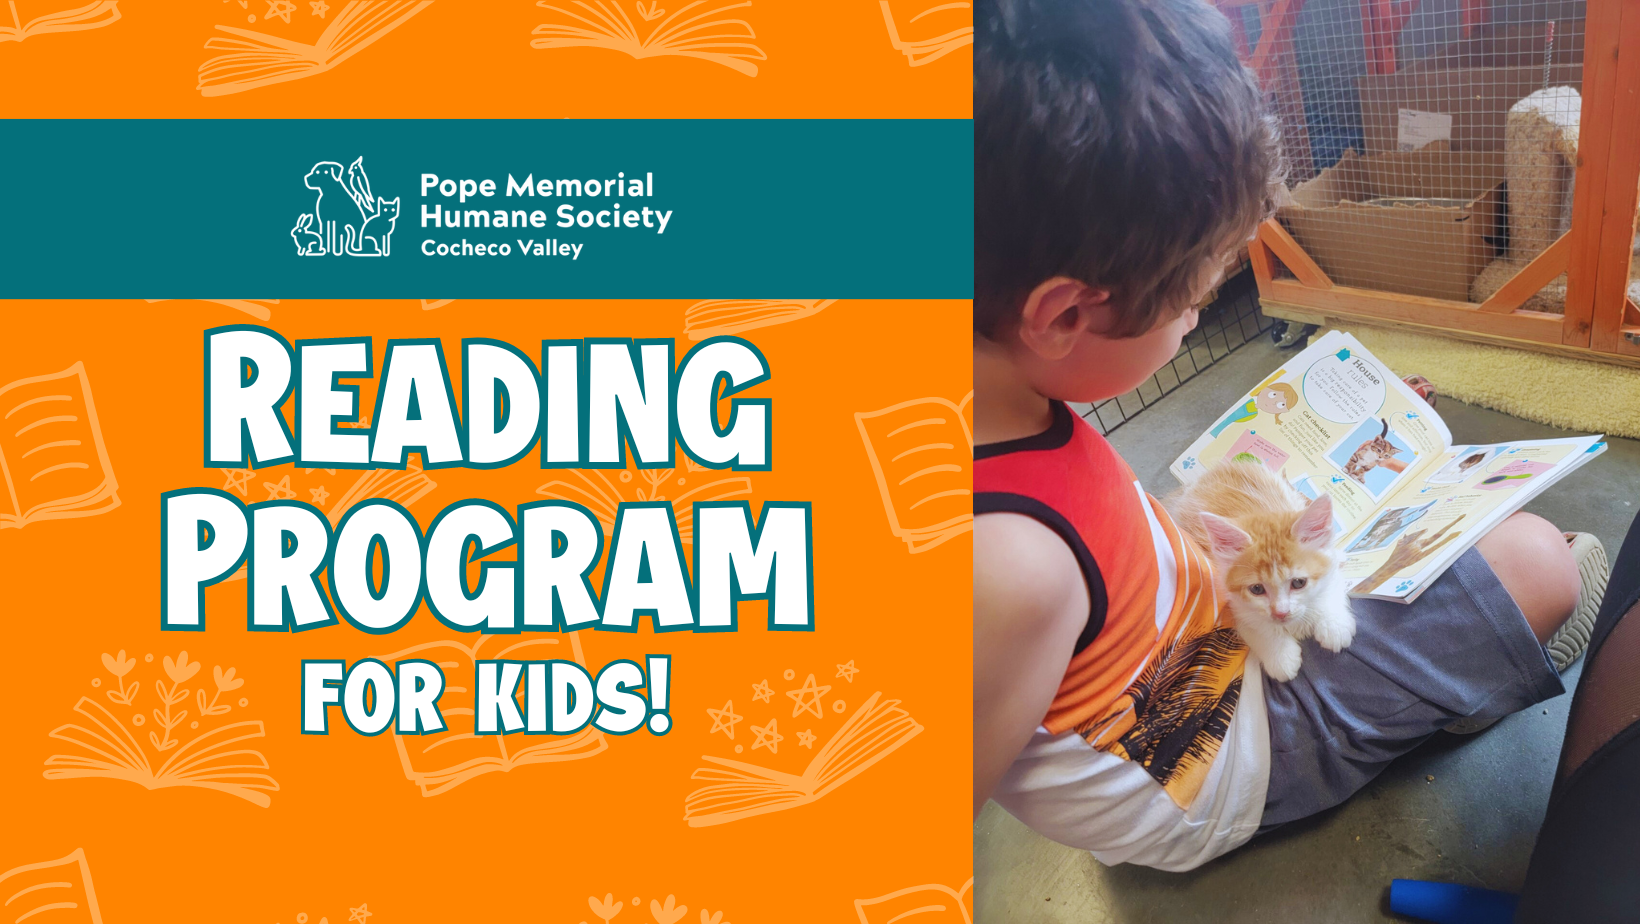 "Reading Program for Kids"